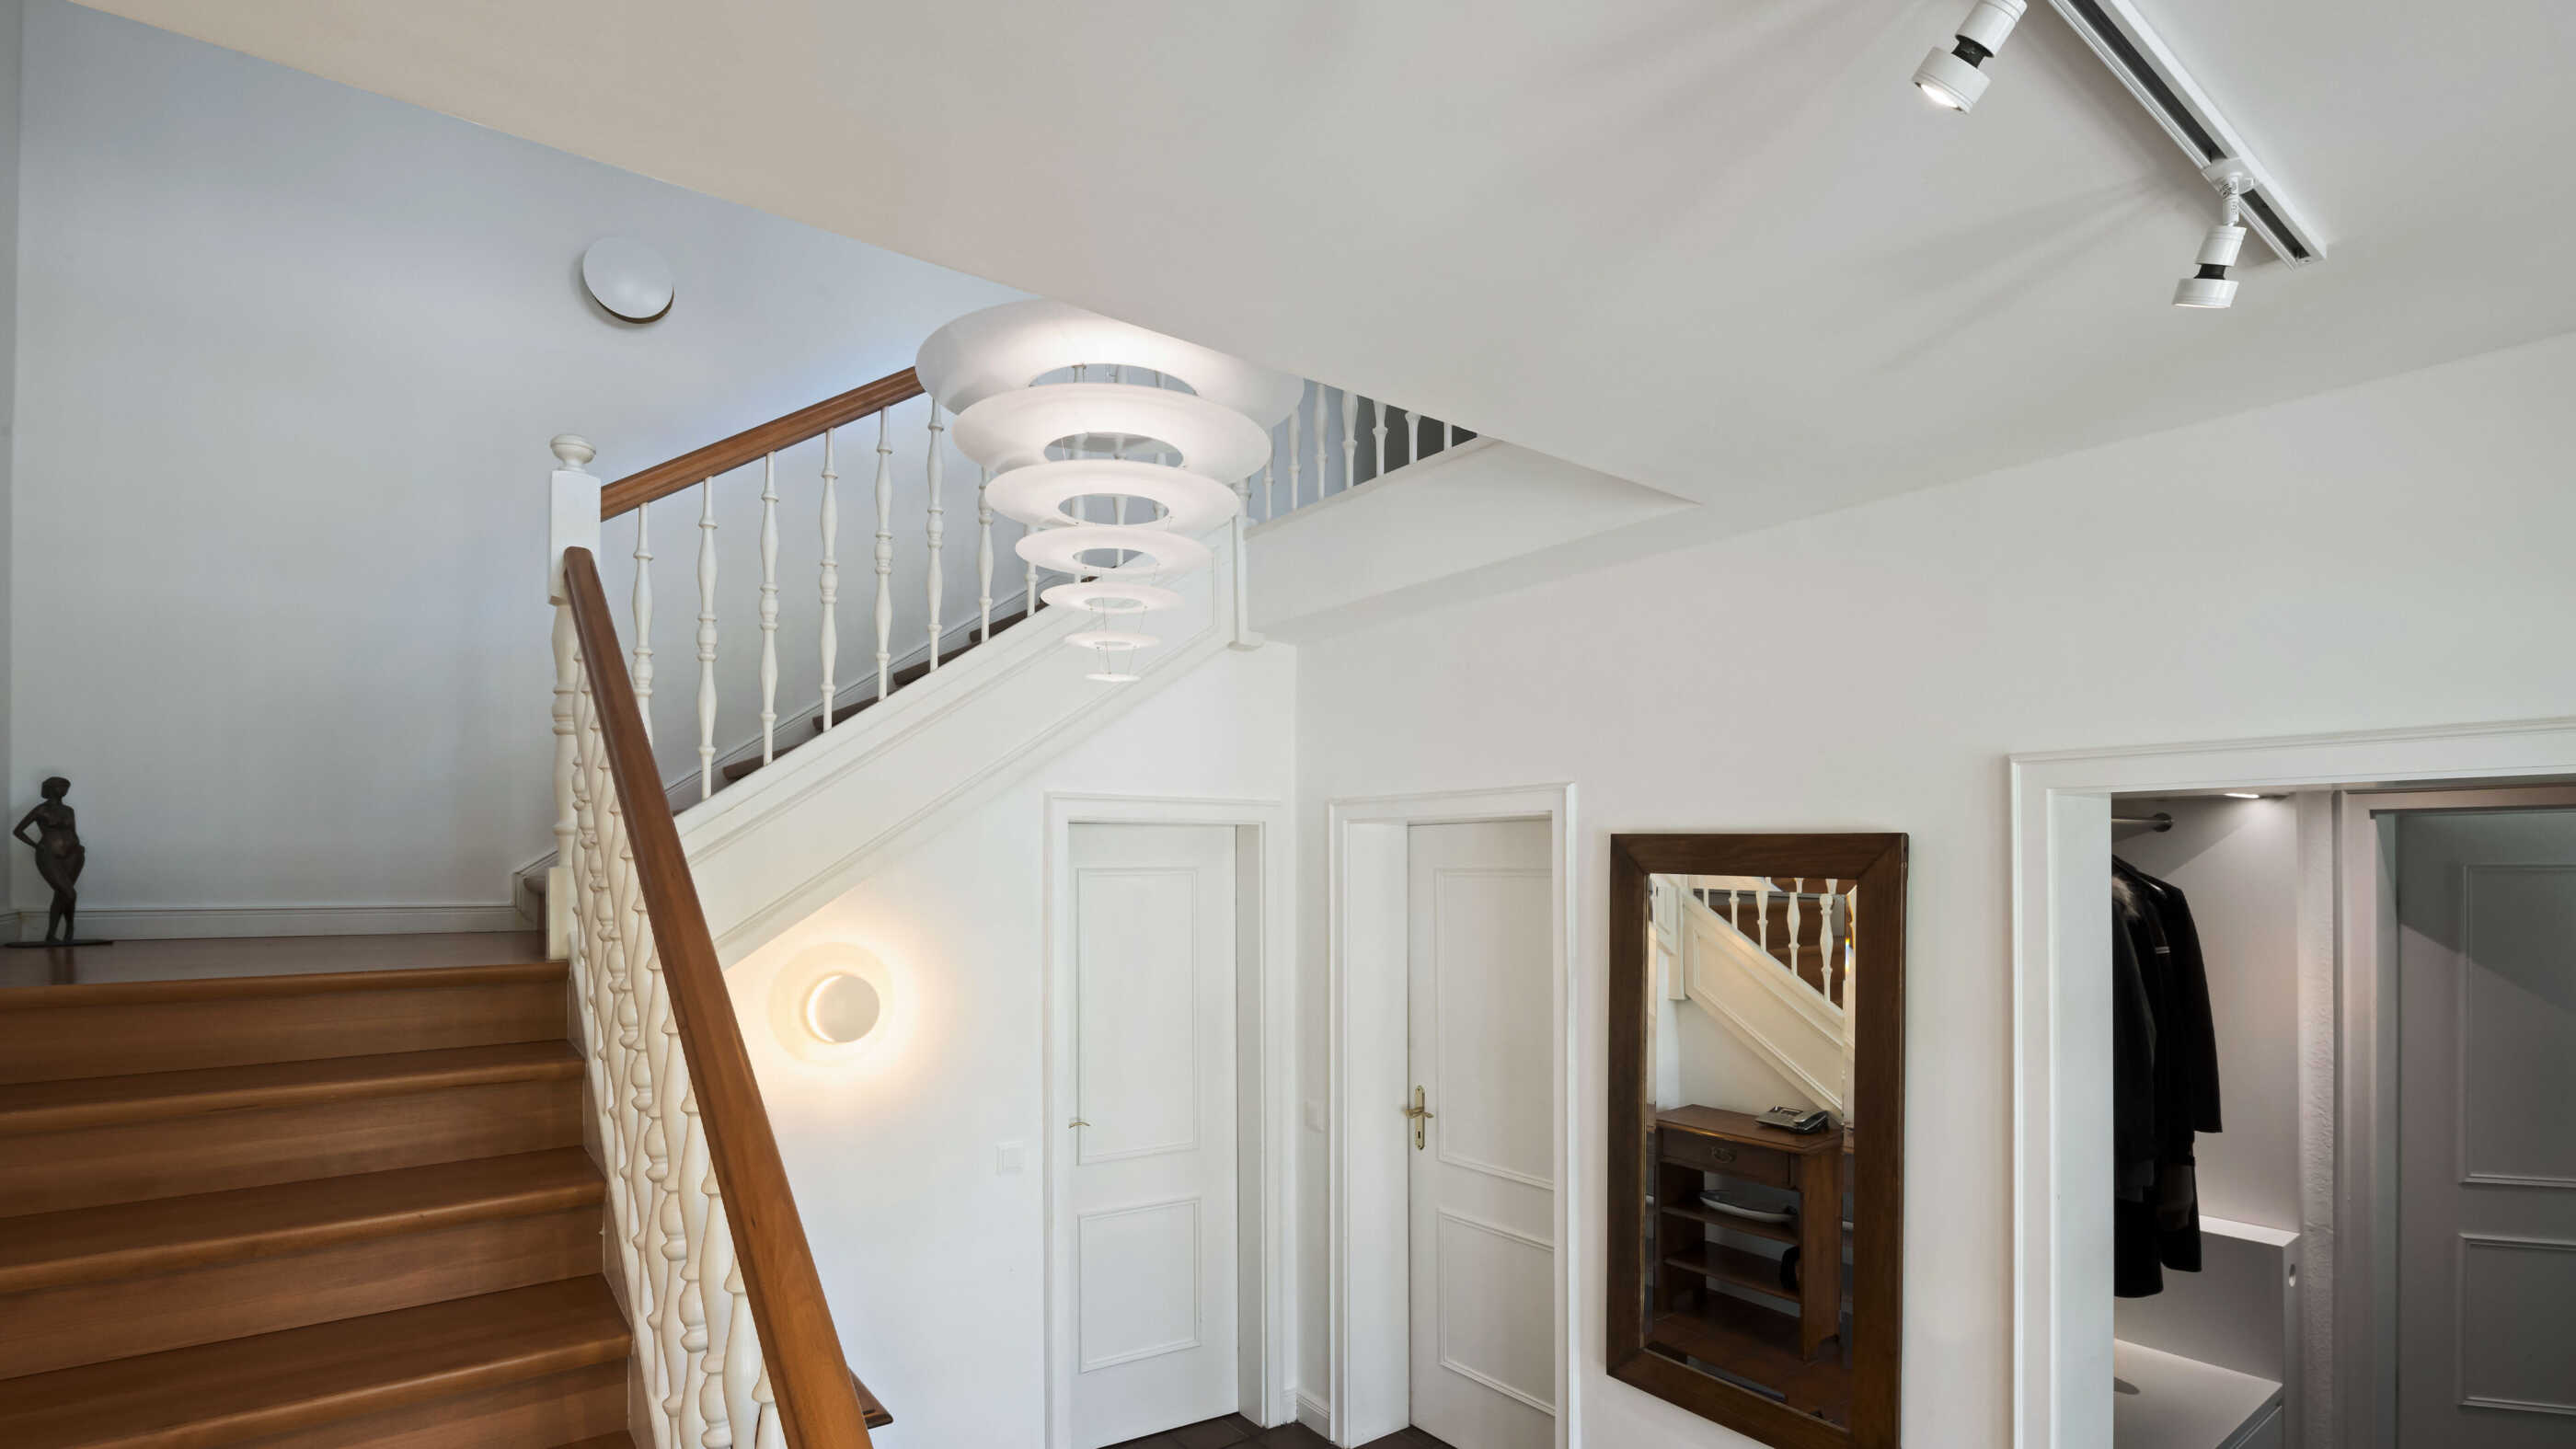 Ein stilvoll beleuchtetes Treppenhaus im Landhausstil, schräge Perspektive: Die Form der Pendelleuchte im Treppenauge erinnert an einen Kegel, der auf der Spitze steht. (Foto: Prediger Lichtberater)